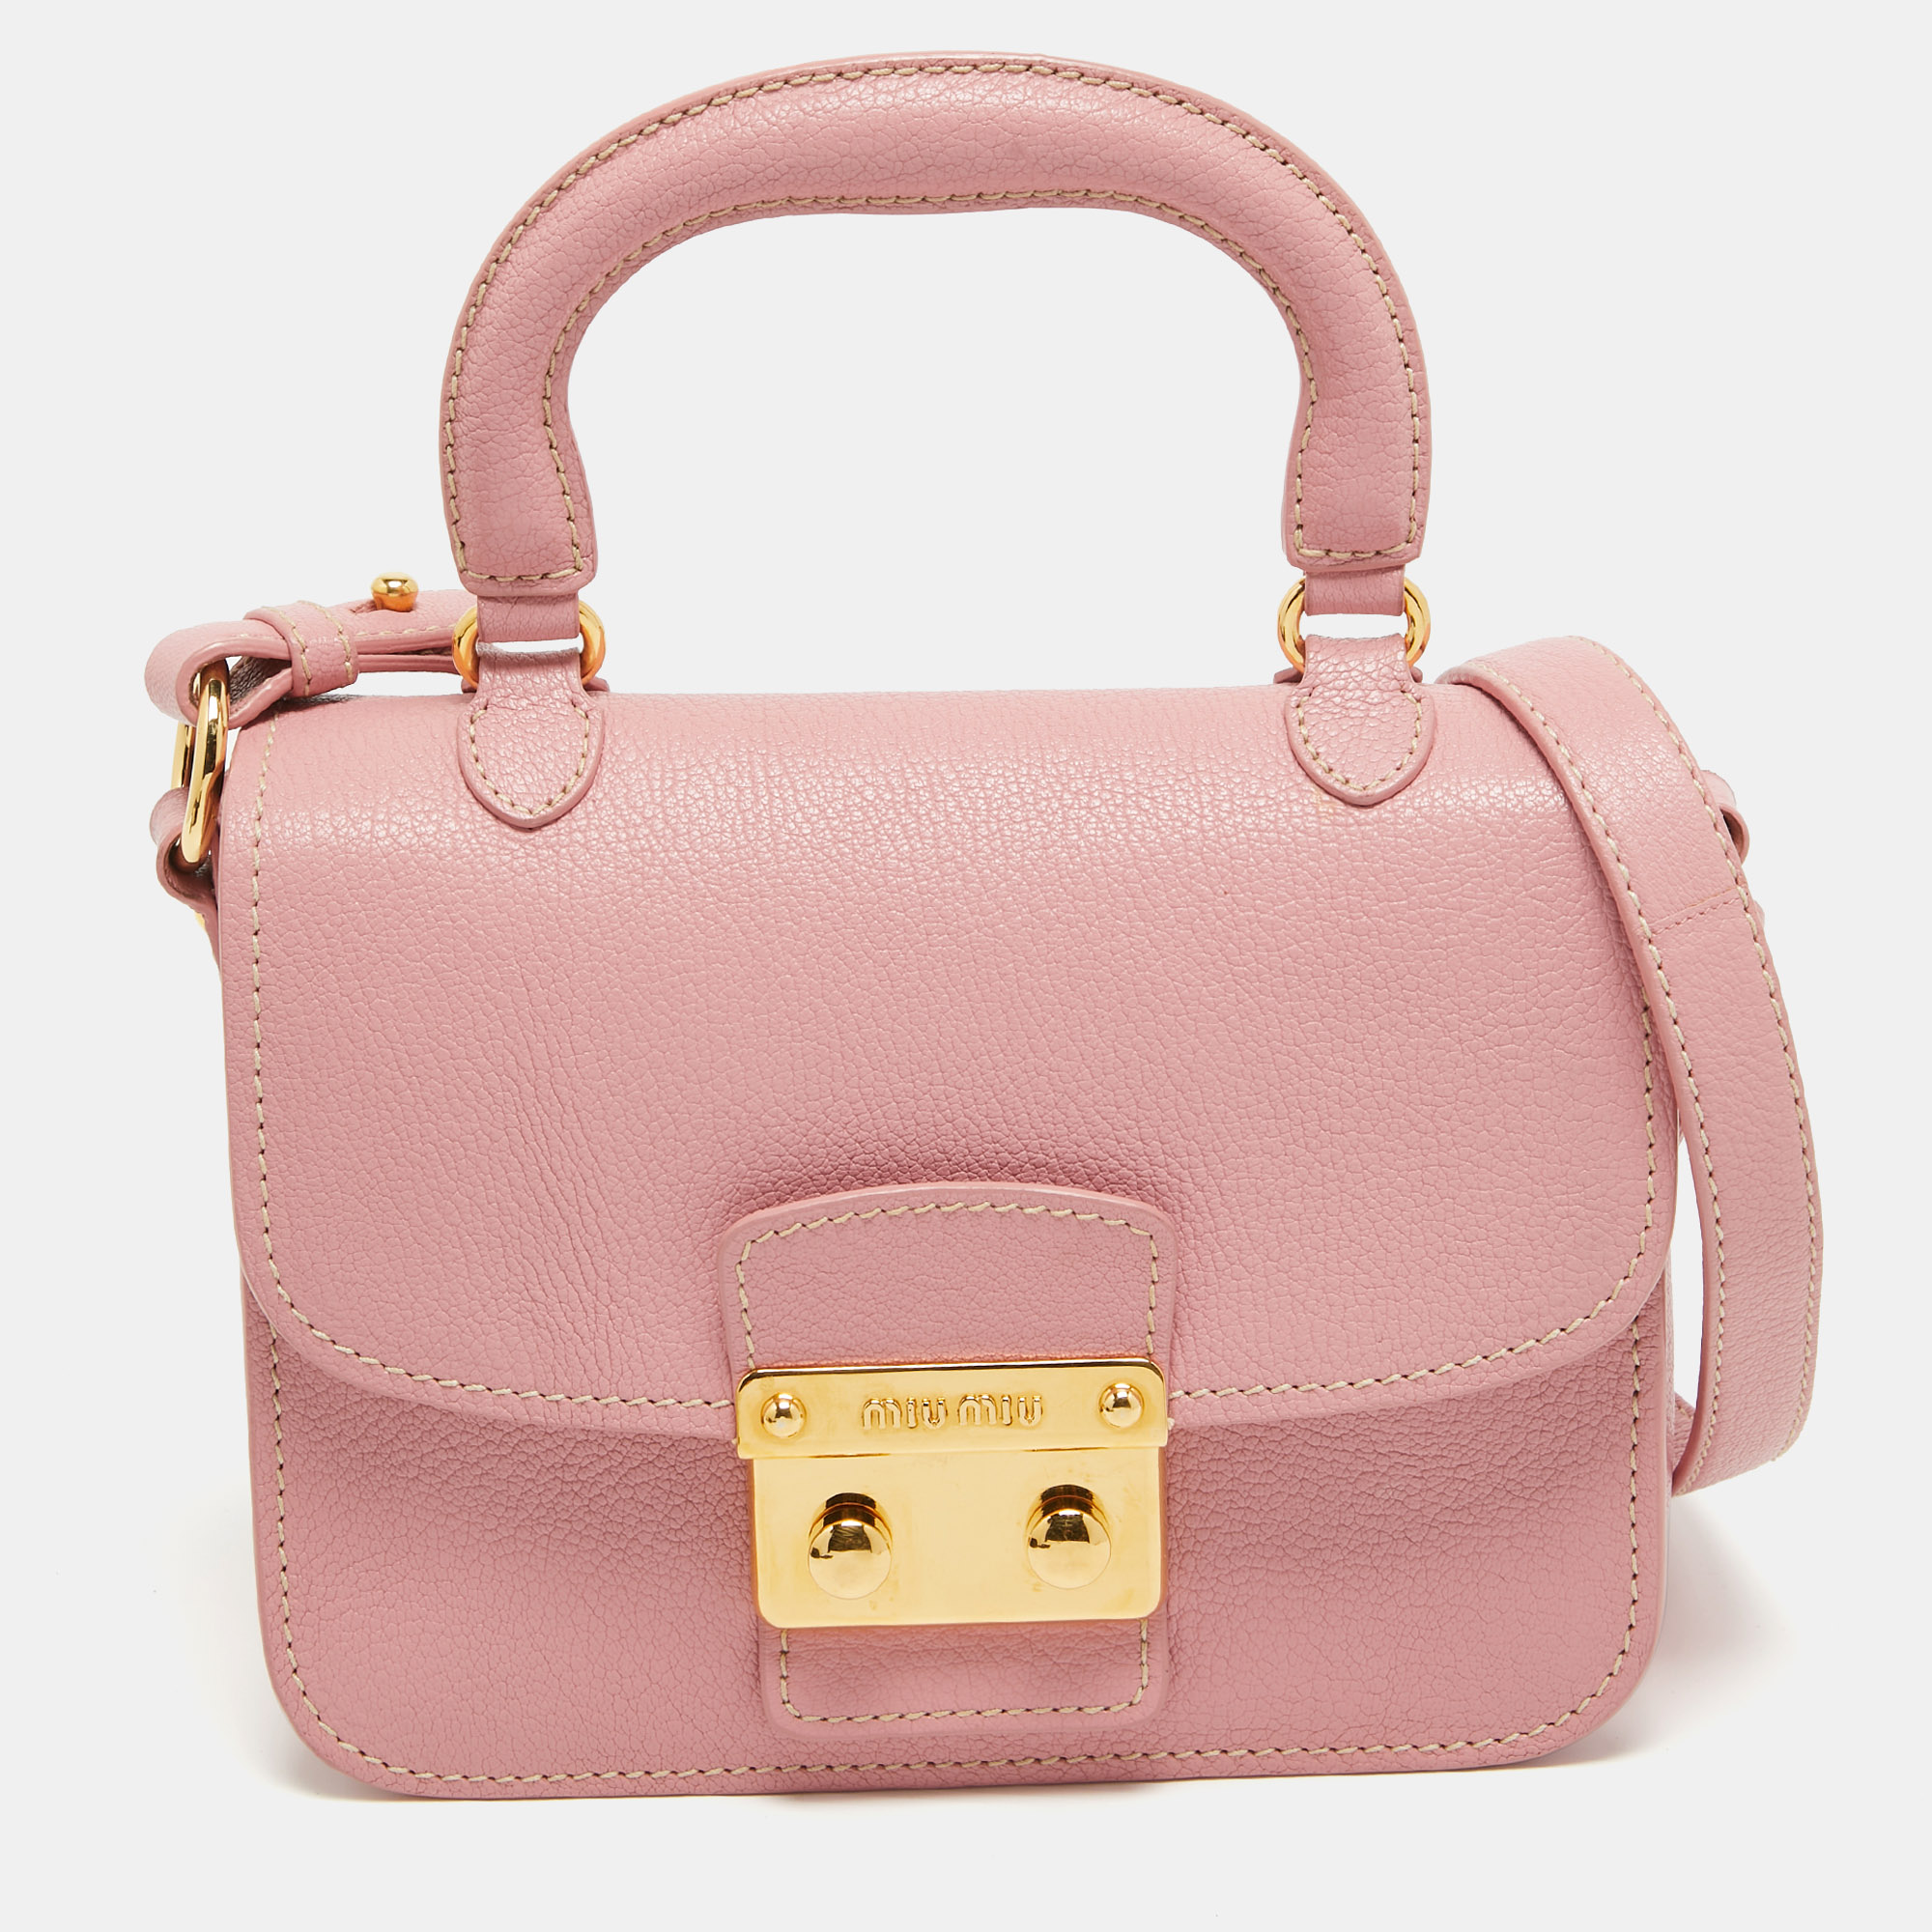 Pre-owned Miu Miu Pink Leather Pushlock Flap Top Handle Bag